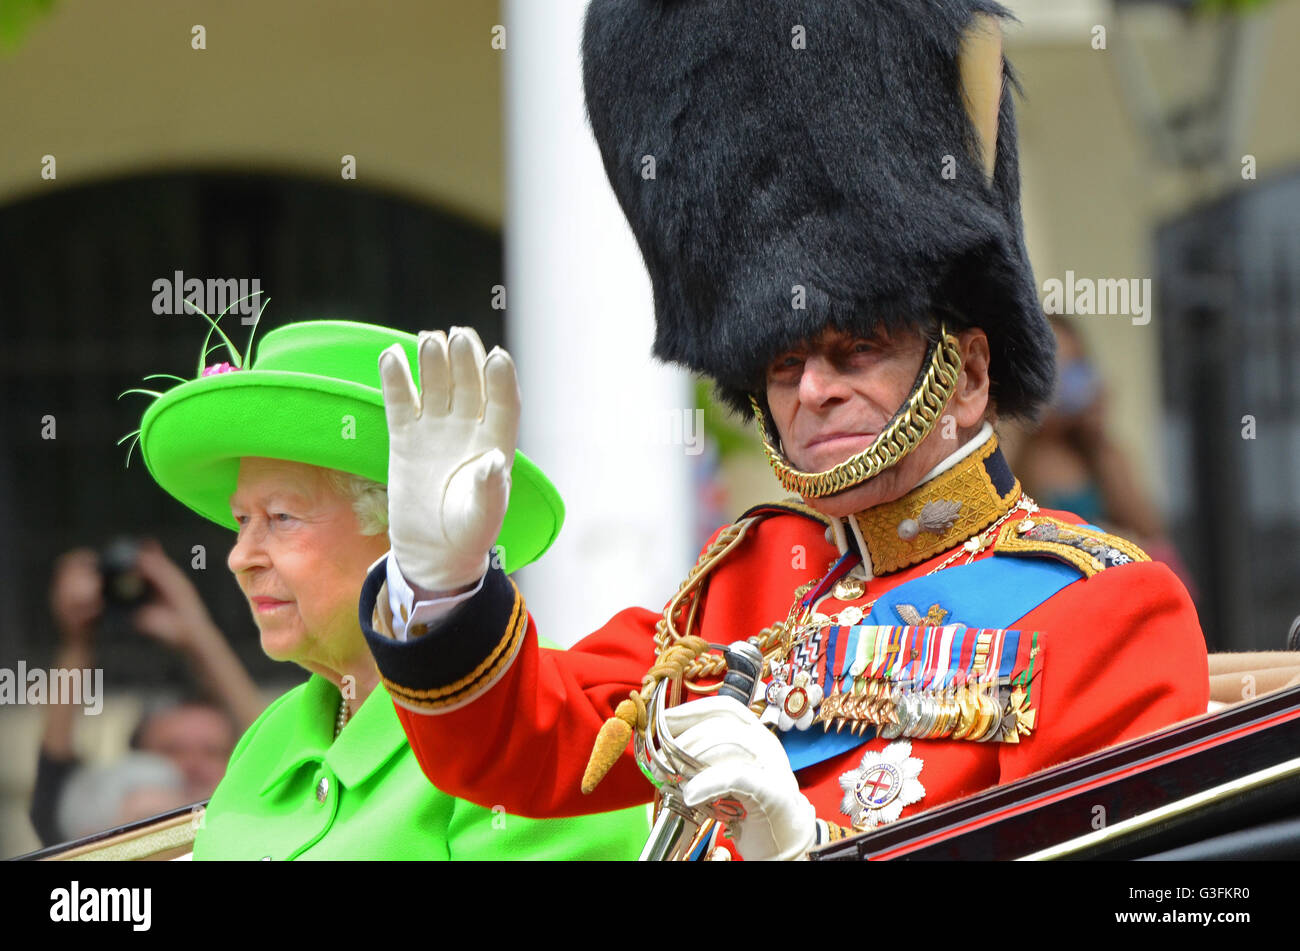 El Príncipe Felipe agitando durante el Troping el Color con la Reina en verde. Duque de Edimburgo en uniforme militar y medallas, agitando. Viejo Foto de stock